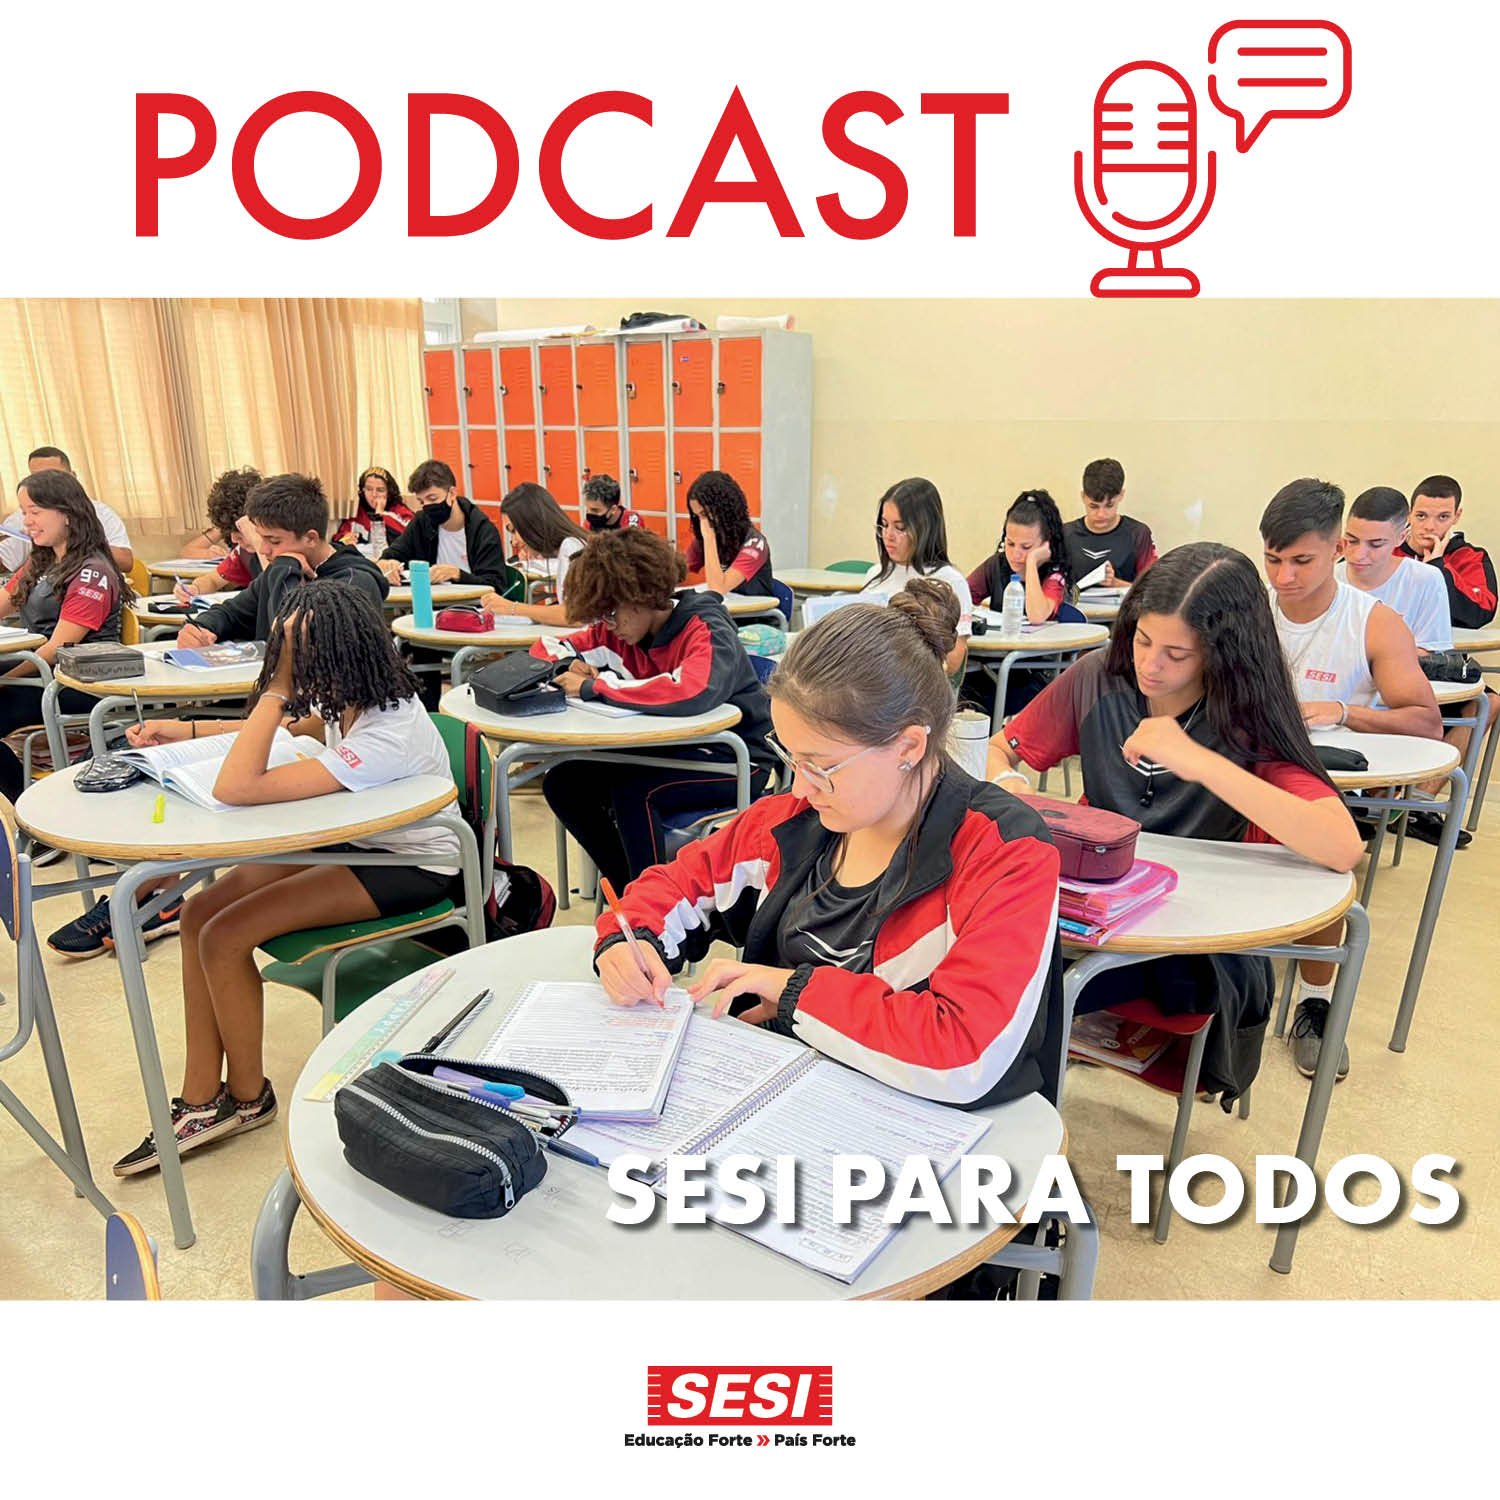 Conteúdo Patrocinado: O Sesi para Todos é um conjunto de soluções educacionais já testadas e aprovadas na rede Sesi que está agora à disposição das escolas estaduais paulistas